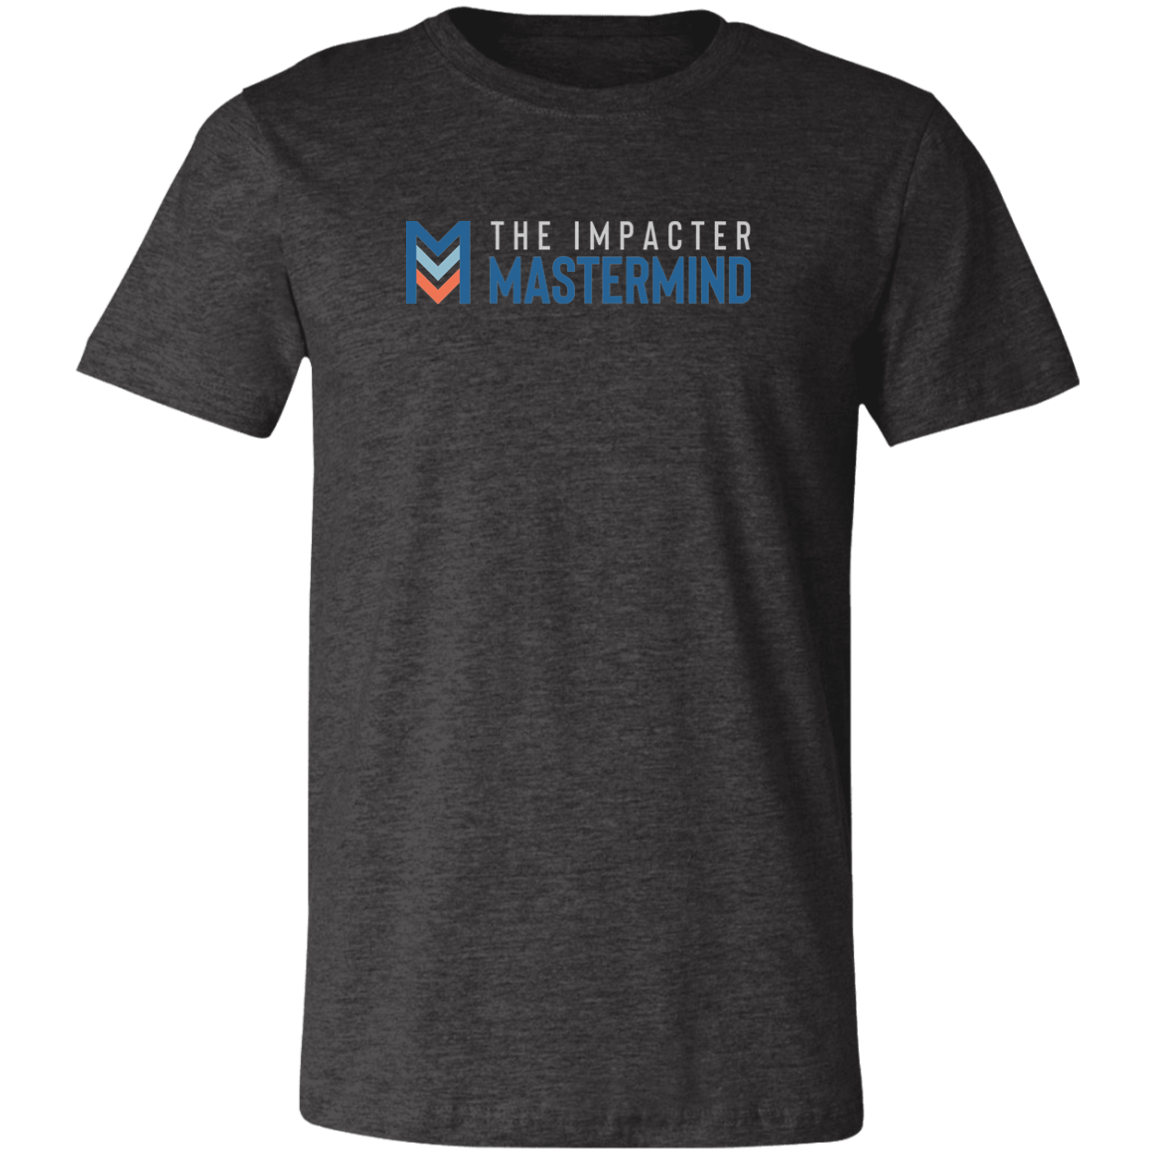 The Impacter Mastermind - Premium Cotton T-Shirt